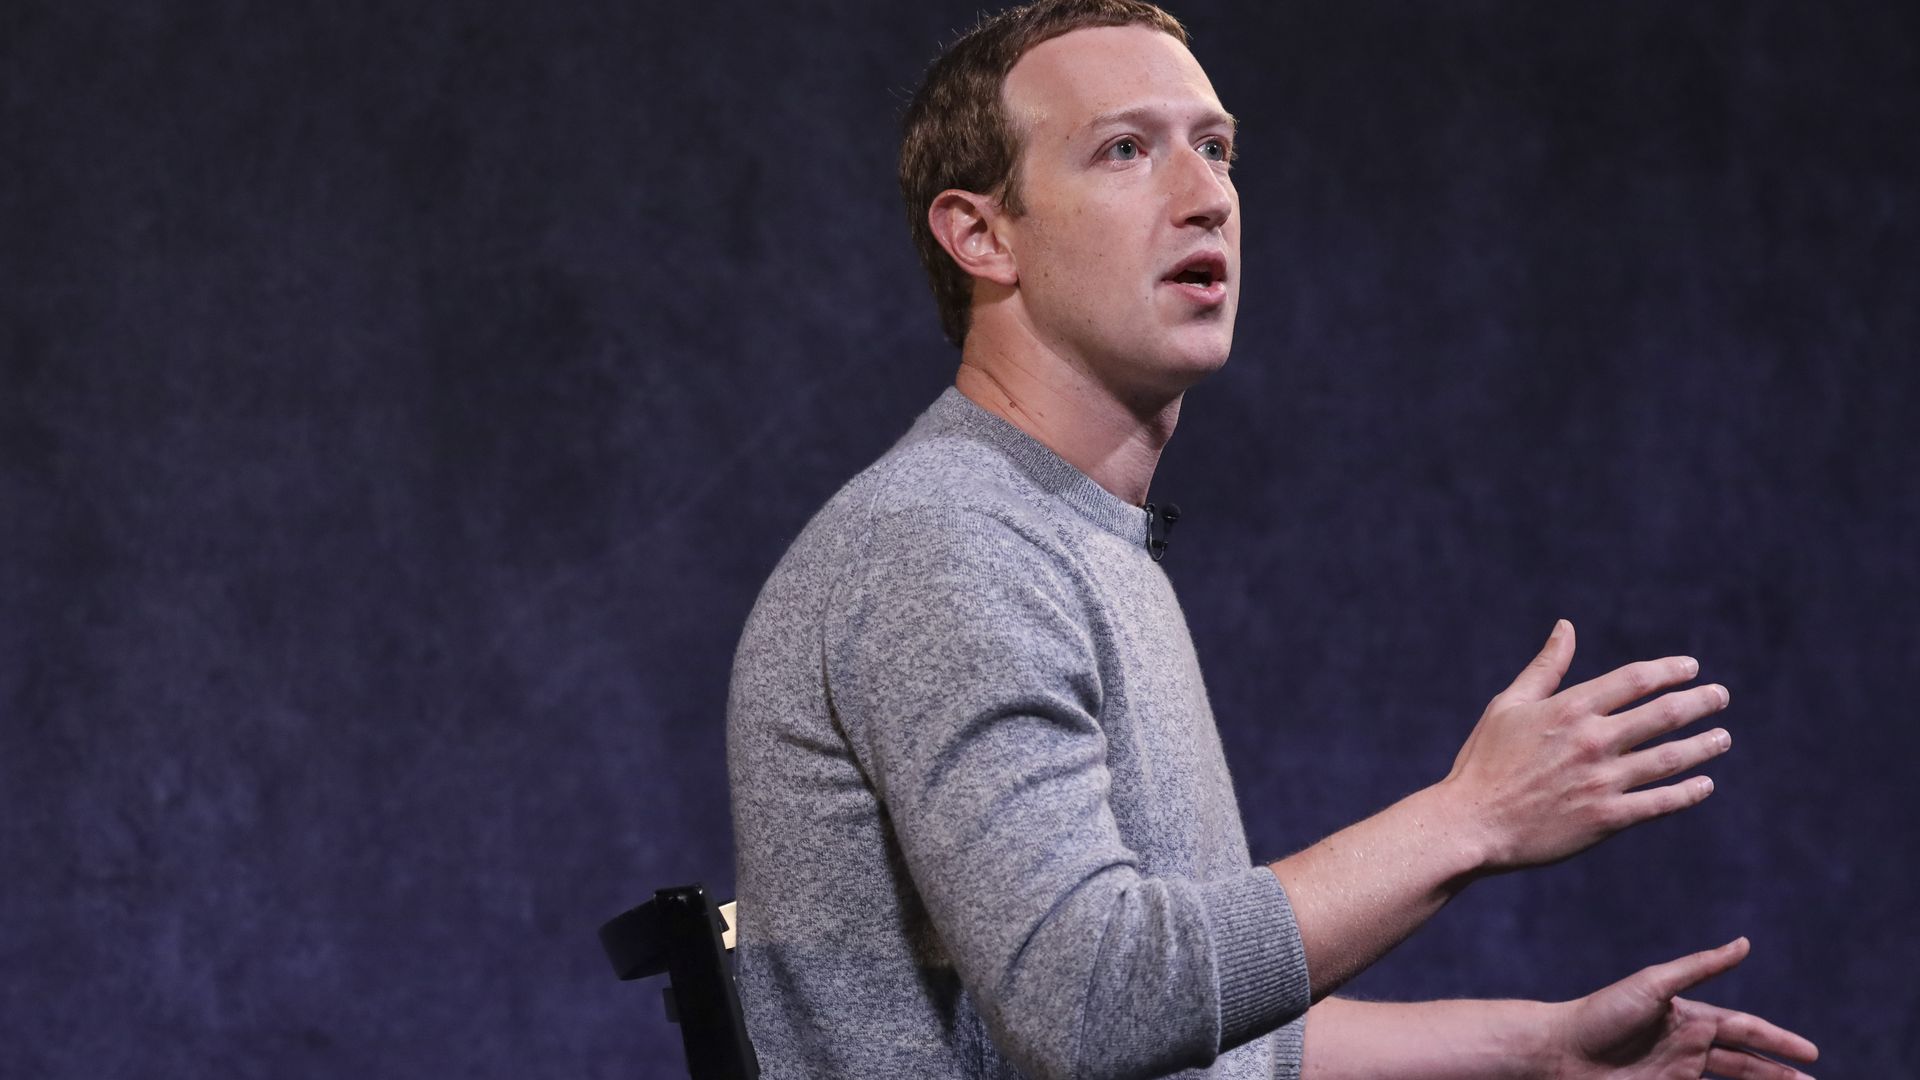 A photo of Facebook CEO Mark Zuckerberg giving a speech.